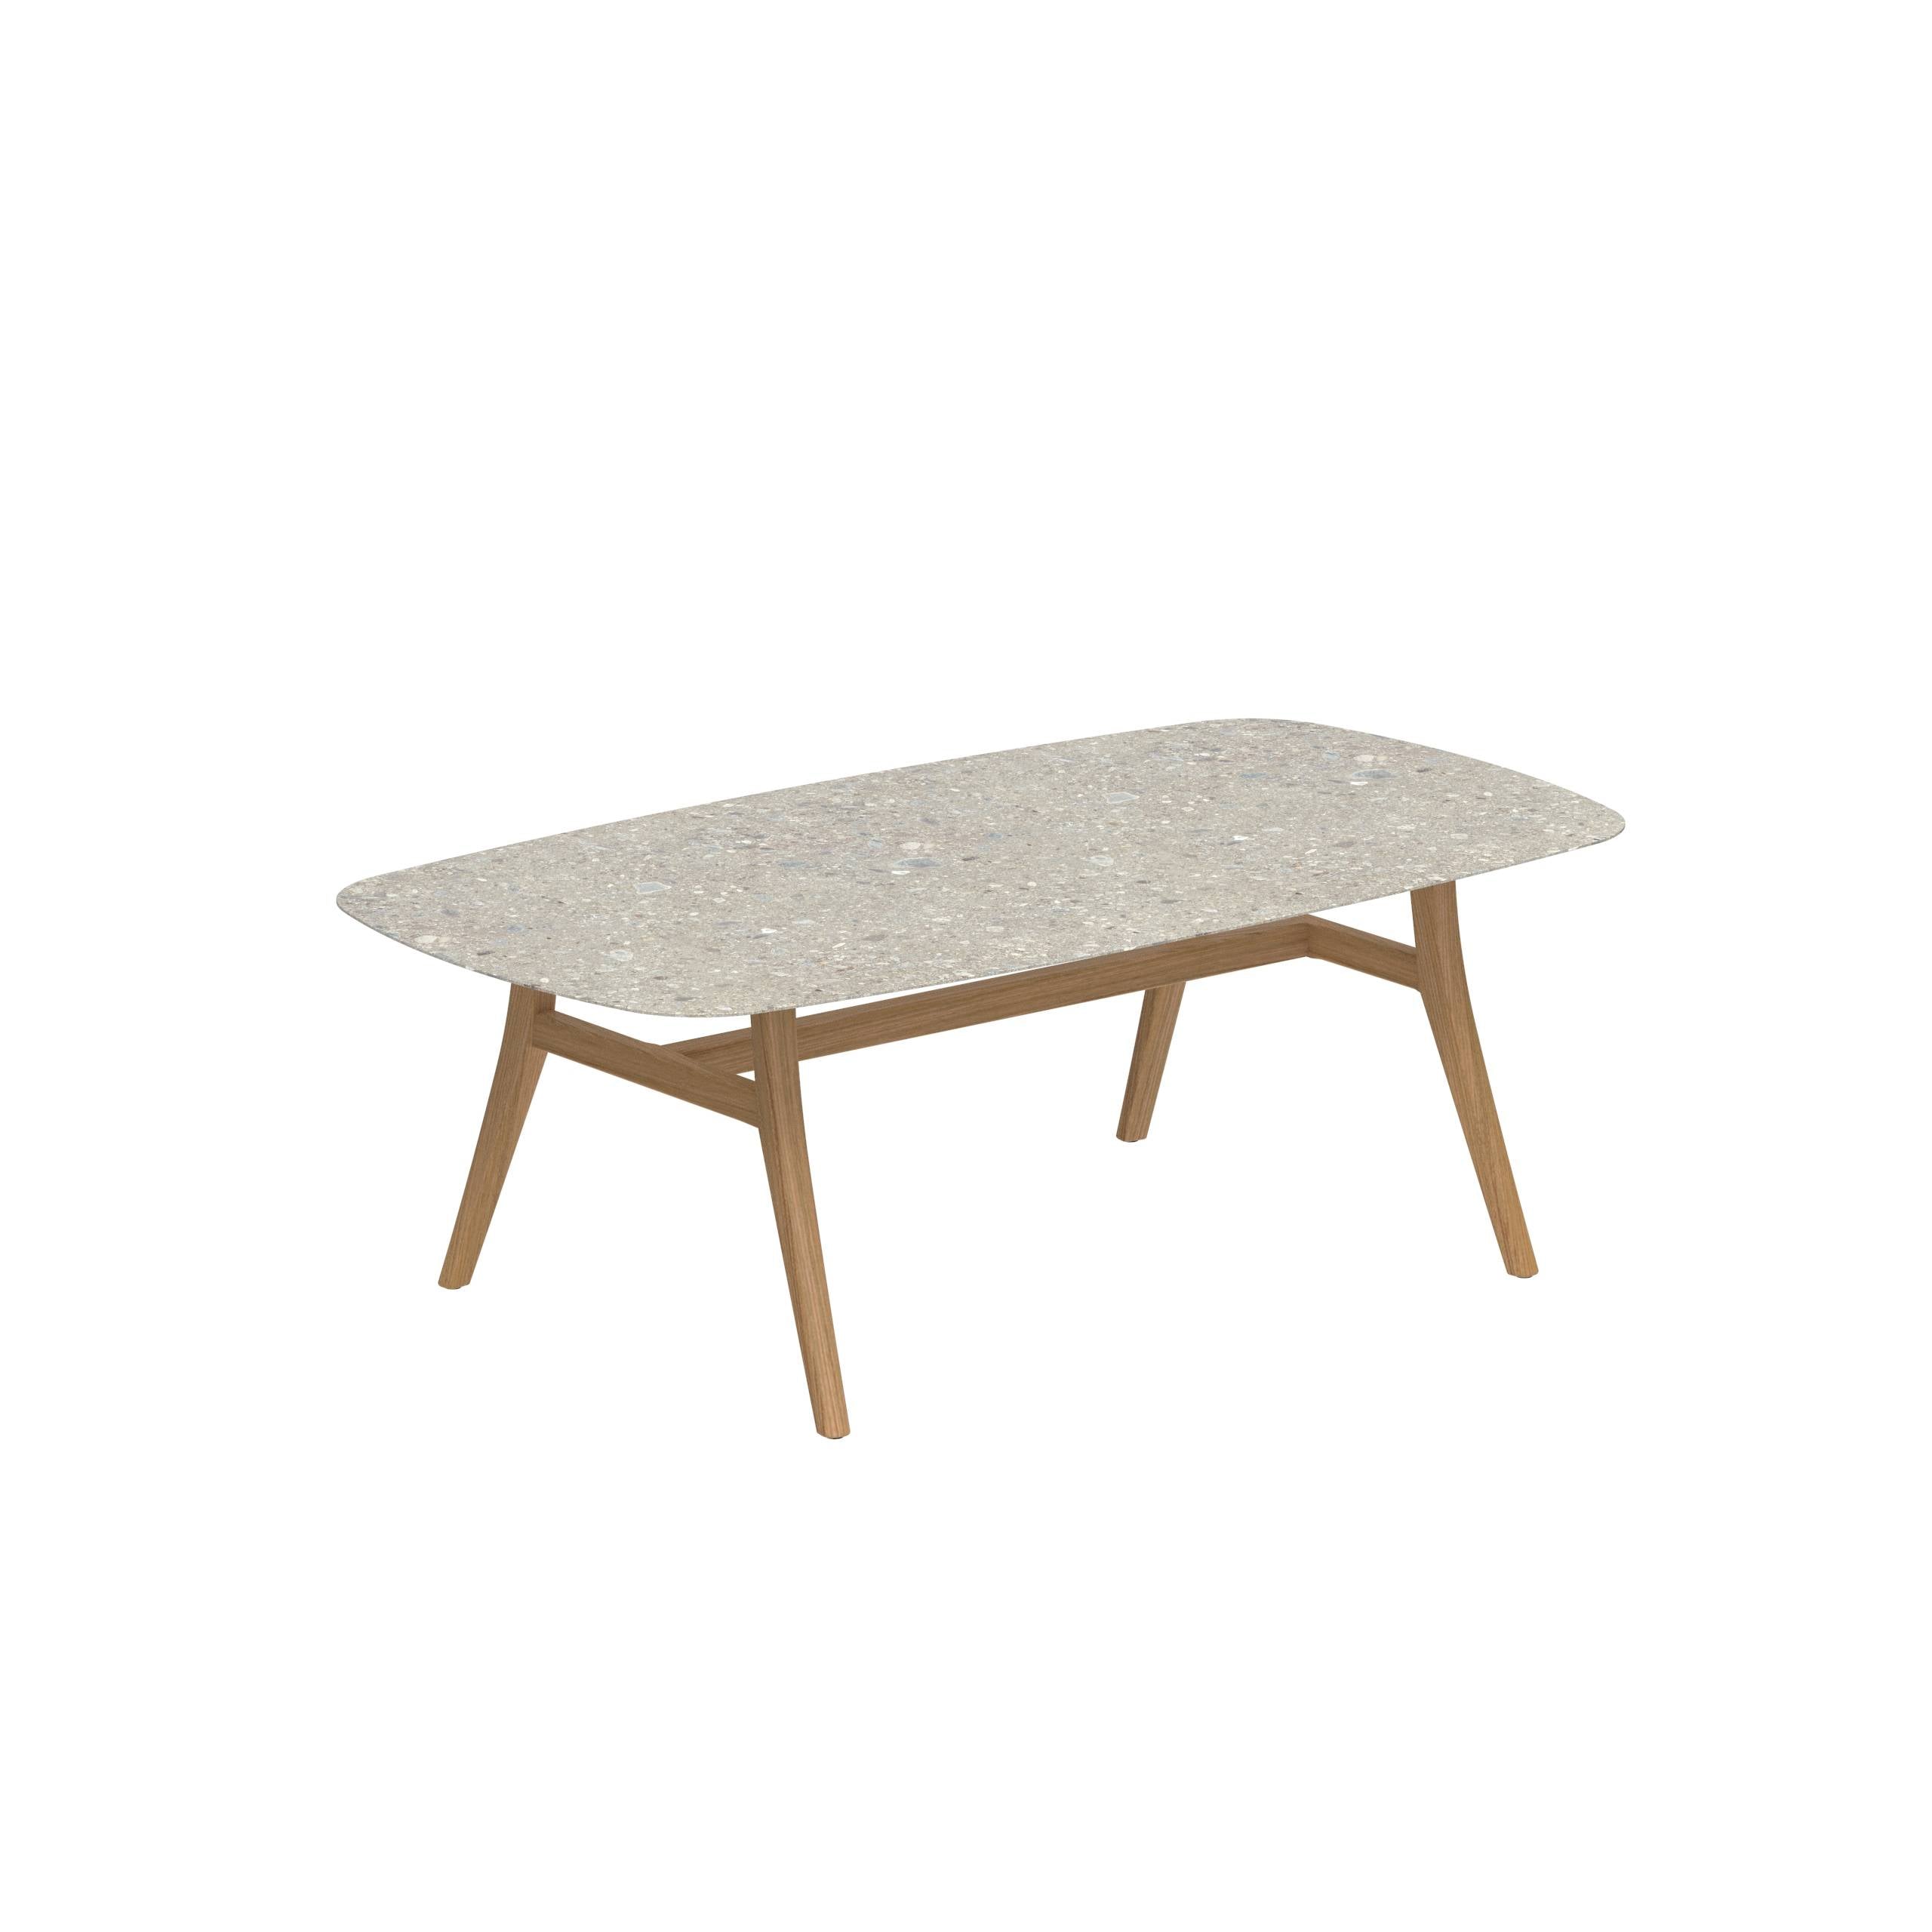 Zidiz Table 220x120cm Ceramic Ceppo Dolomitica